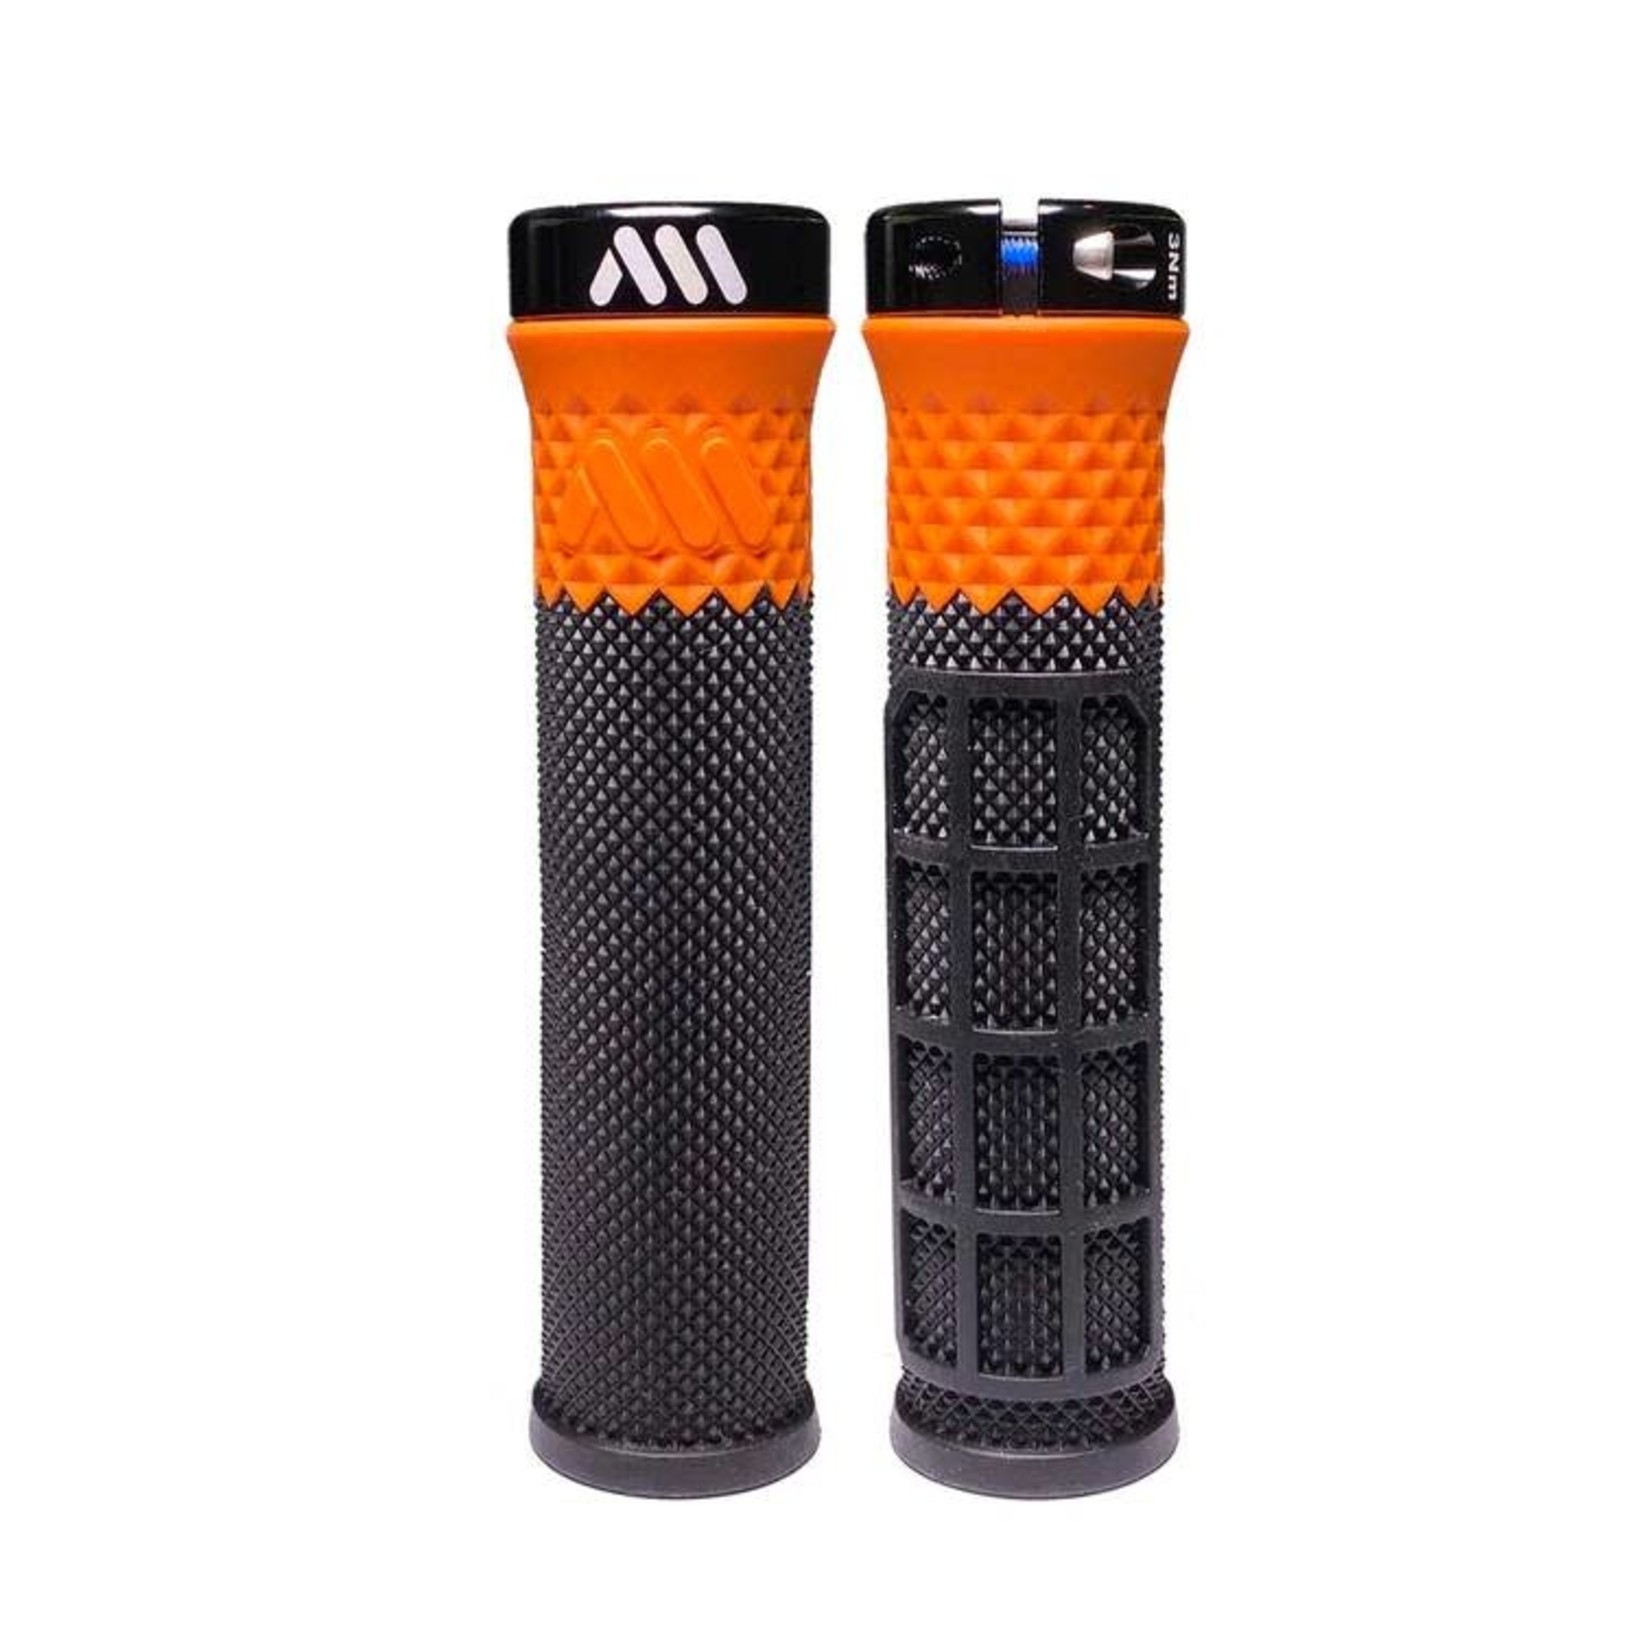 All Mountain Style All Mountain Style Cero Lock-on Grips Black/Orange